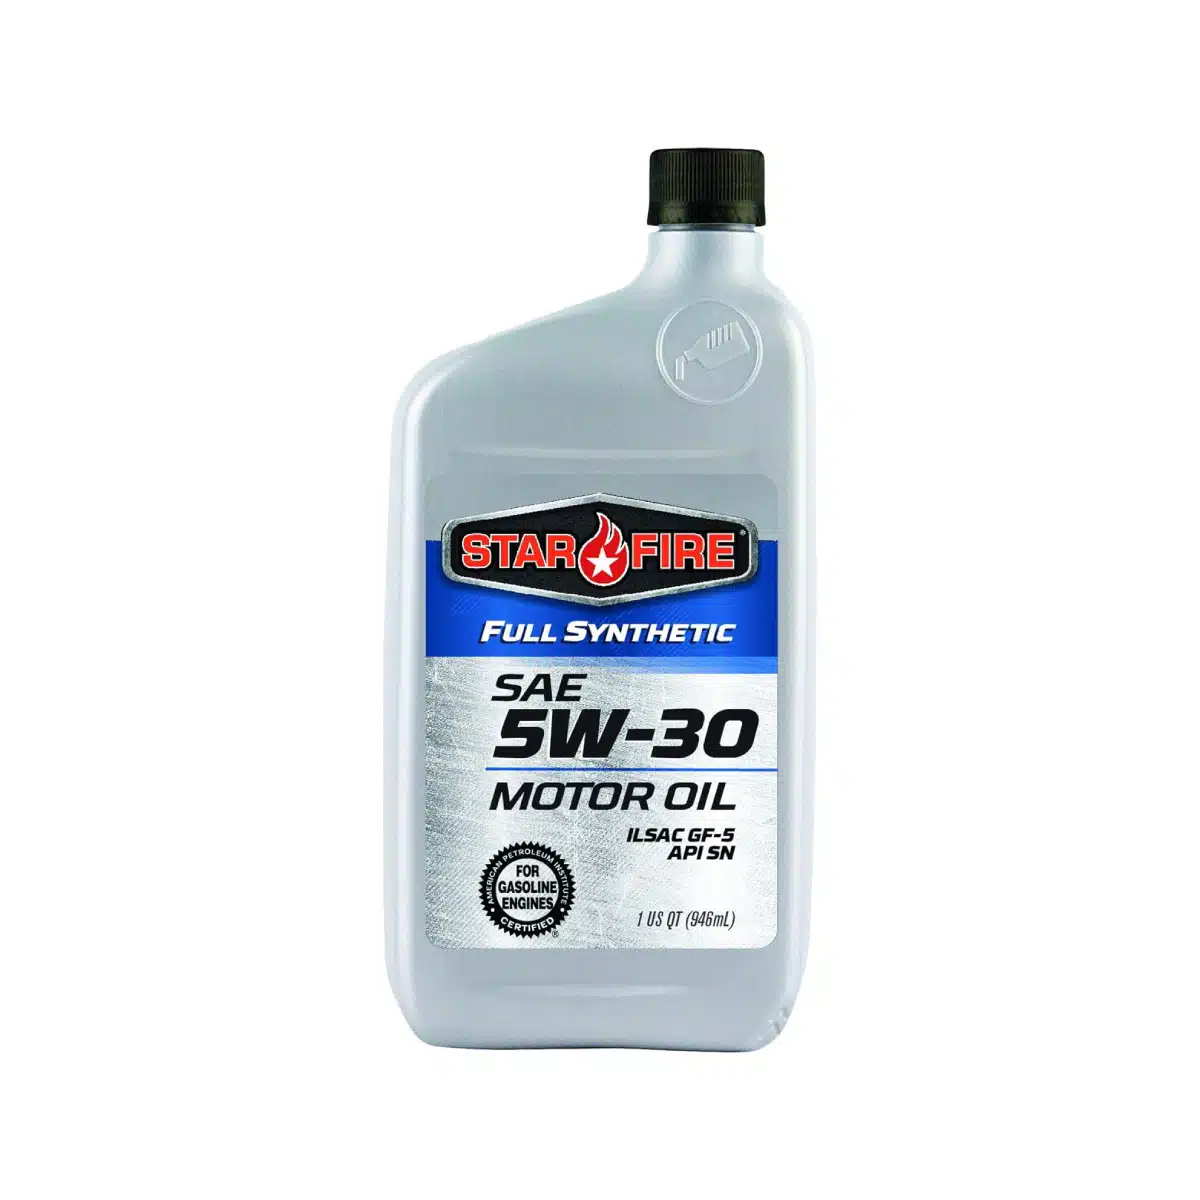 Full Synthetic Motor Oil 5w-30 API SP Quart